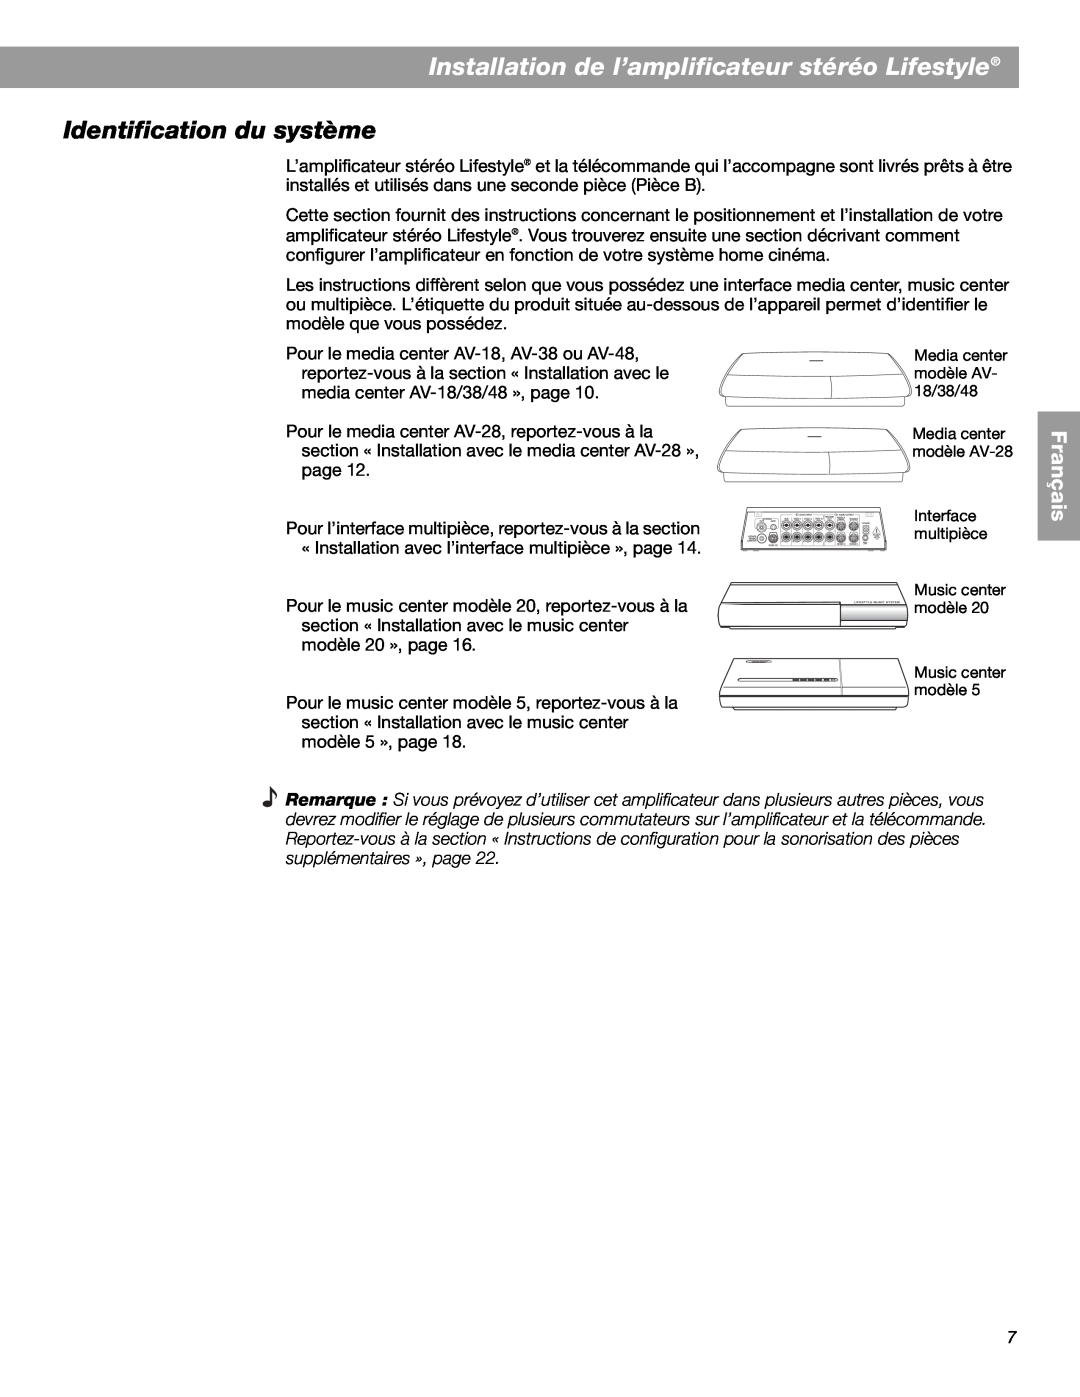 Bose SA-3, SA-2 manual Installation de l’amplificateur stéréo Lifestyle, Identification du système, Français 